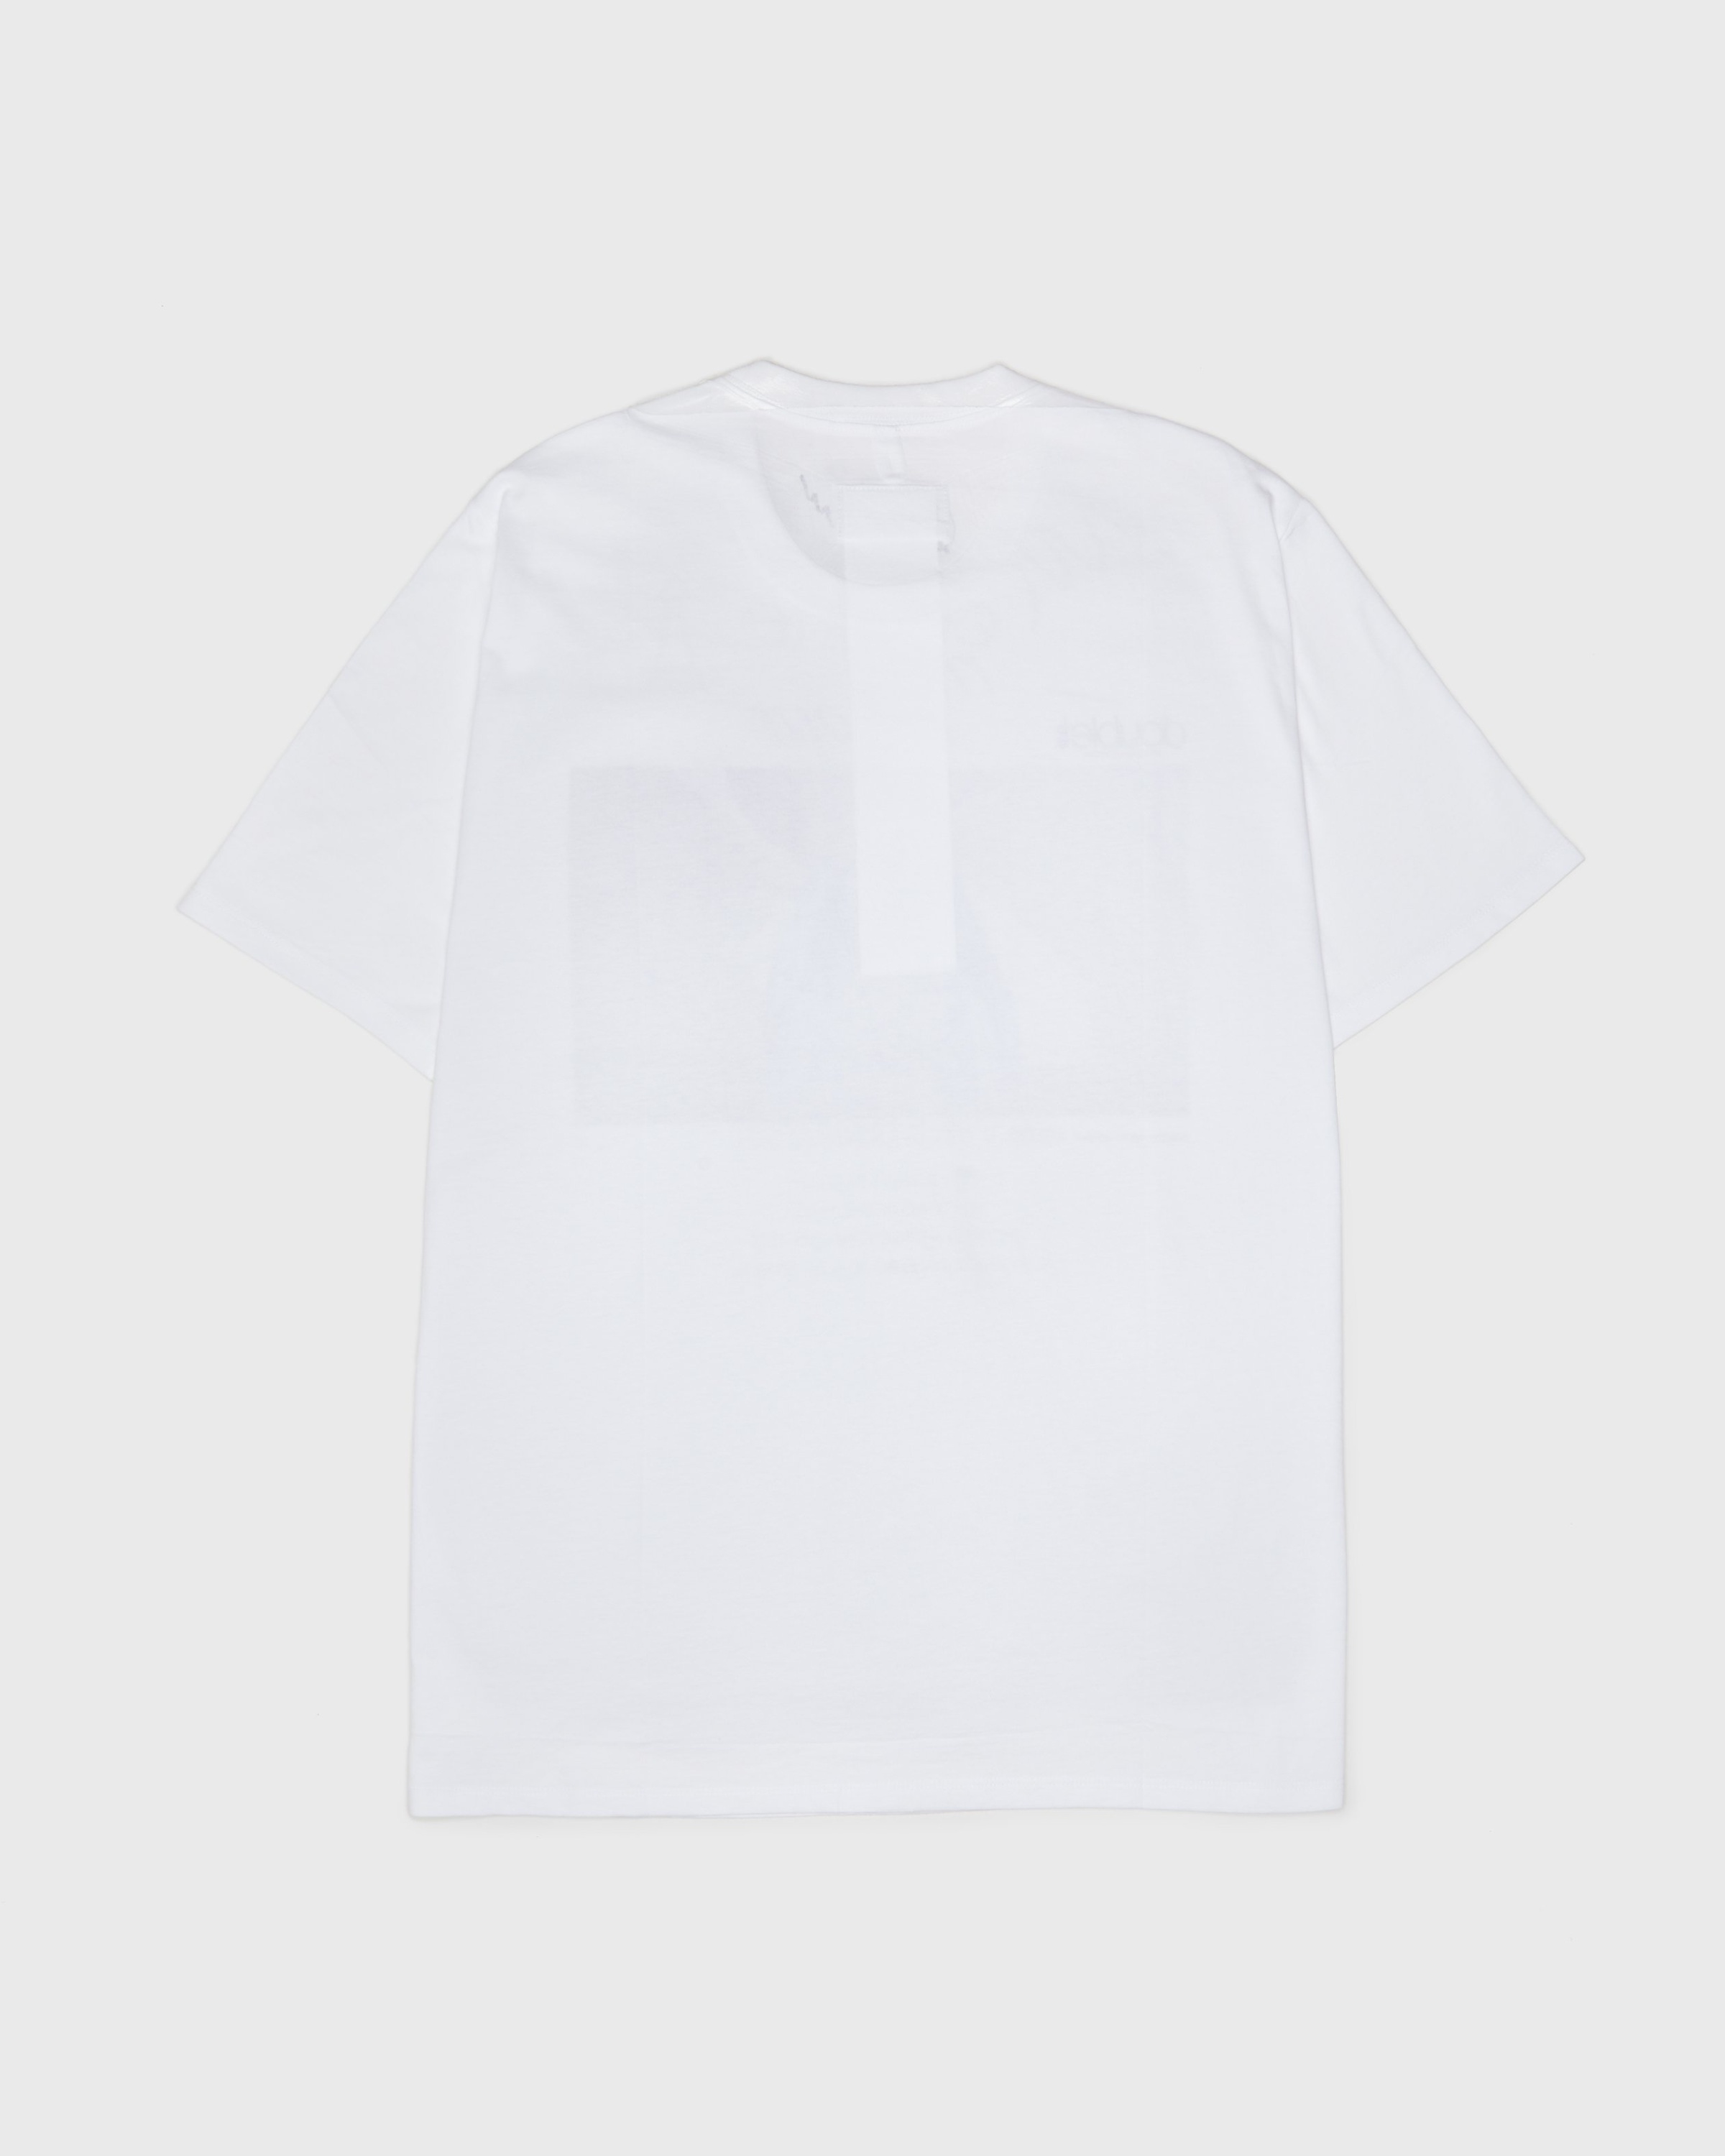 Colette Mon Amour – Doublet T-Shirt - T-Shirts - White - Image 2